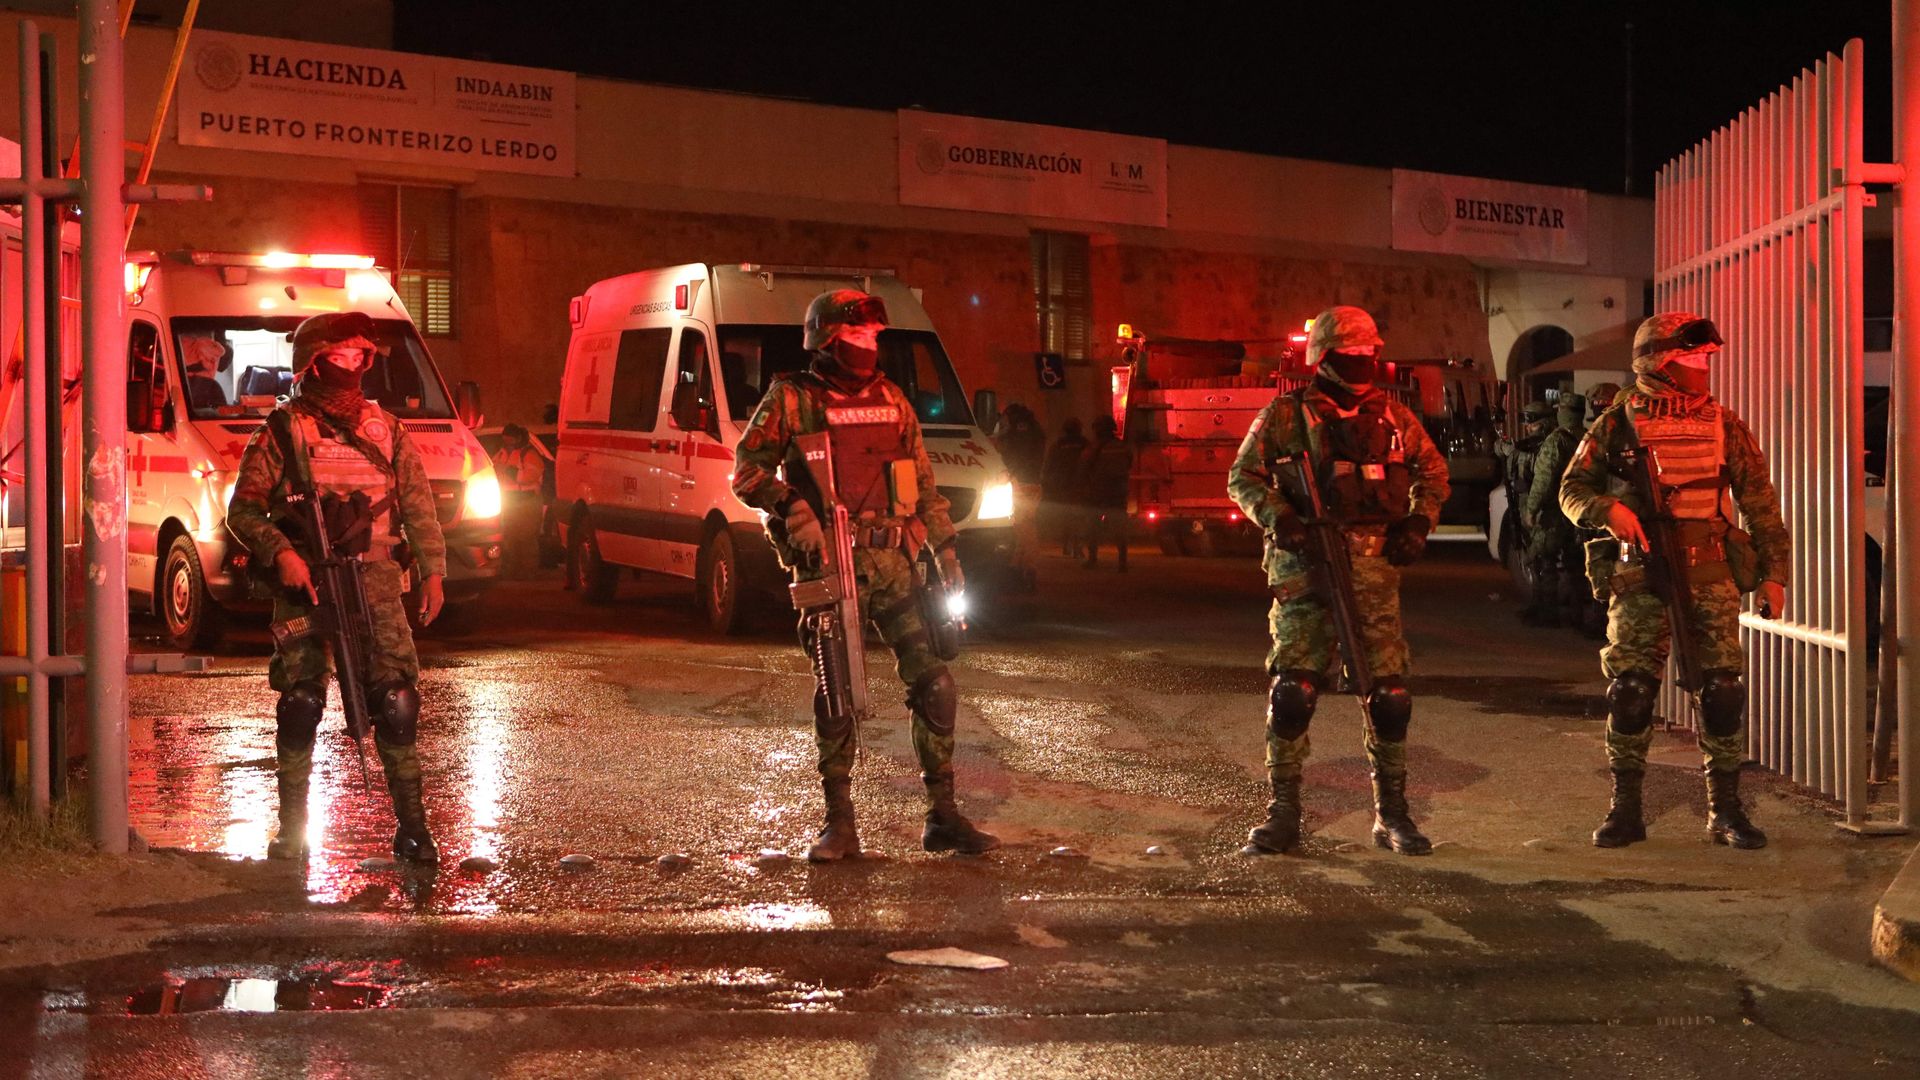 Fire kills dozens at migrant center in Mexico's Ciudad Juárez